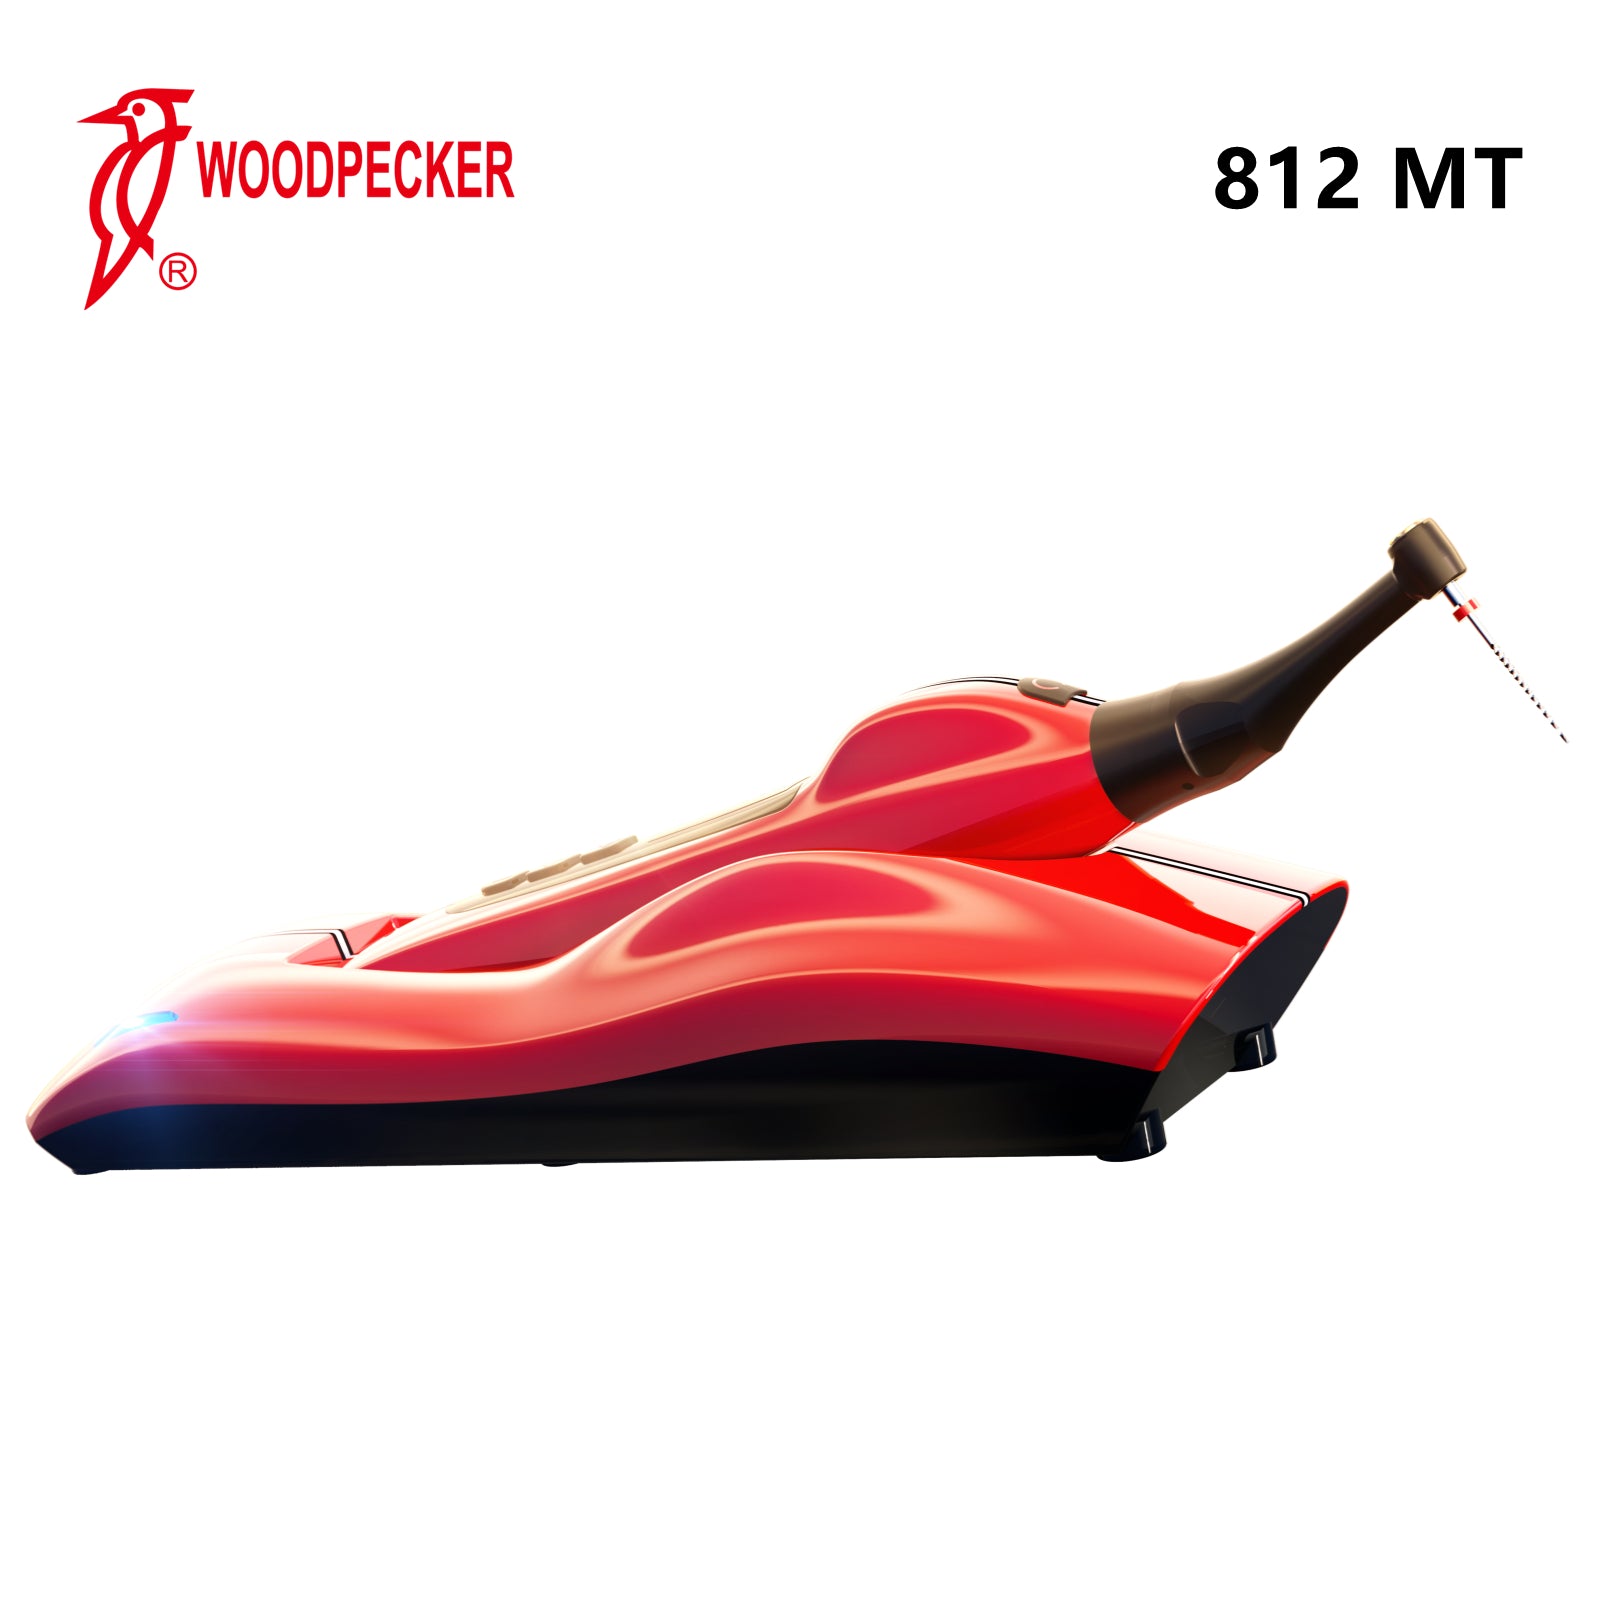 Woodpecker 812 MT EndoMotor by Dr Yoshi Terauchi